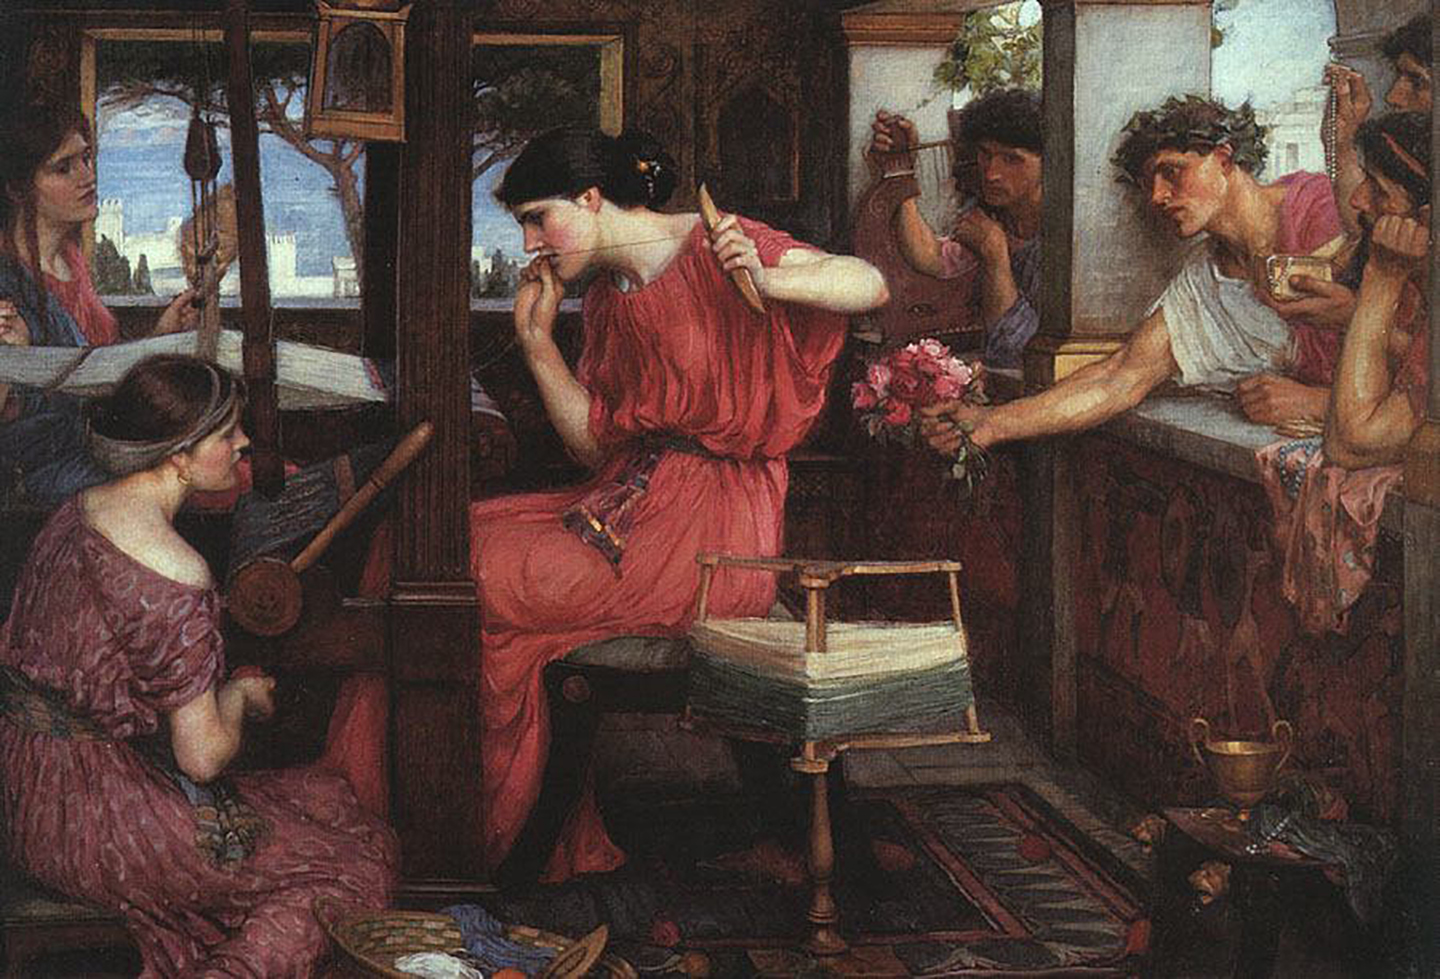 Sự hỗn loạn ngự trị ở Ithaca, nhưng không ai can thiệp để chấm dứt hành vi này. Bức tranh “Nàng Penelope và những kẻ cầu hôn,” 1911–12, do họa sĩ John William Waterhouse vẽ. (Ảnh: Tài sản công)